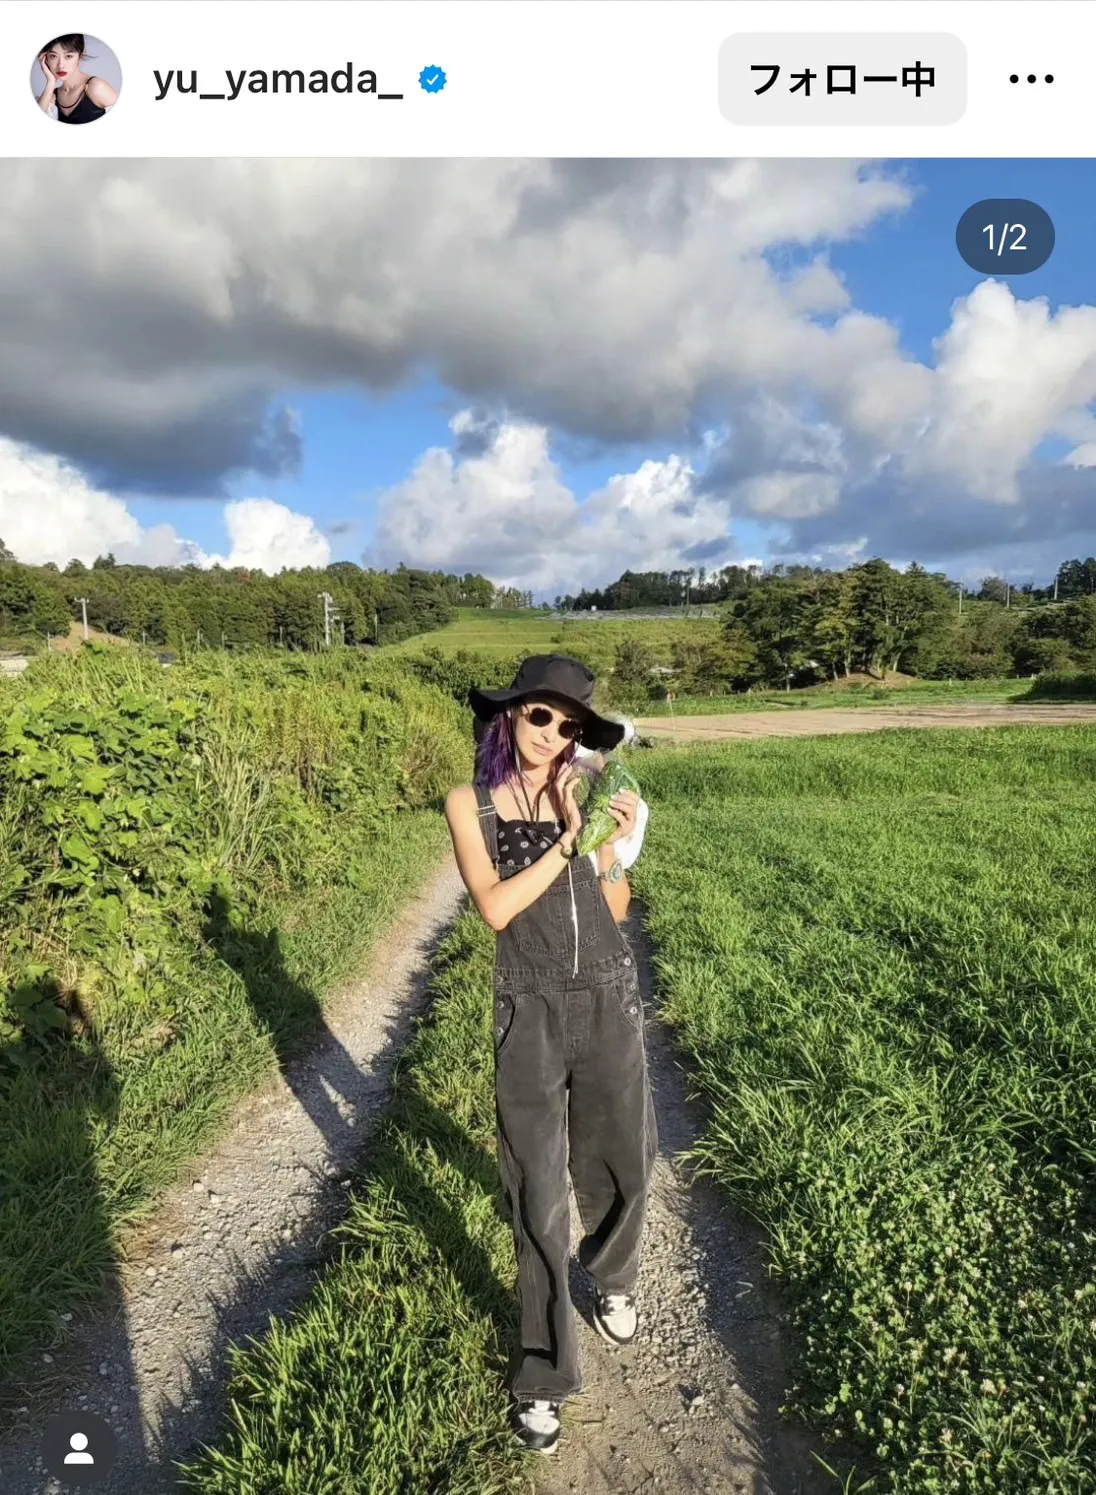  【写真】山田優、自然の中で9頭身美スタイルを披露…“さいこー”農作業を楽しむサロペット姿